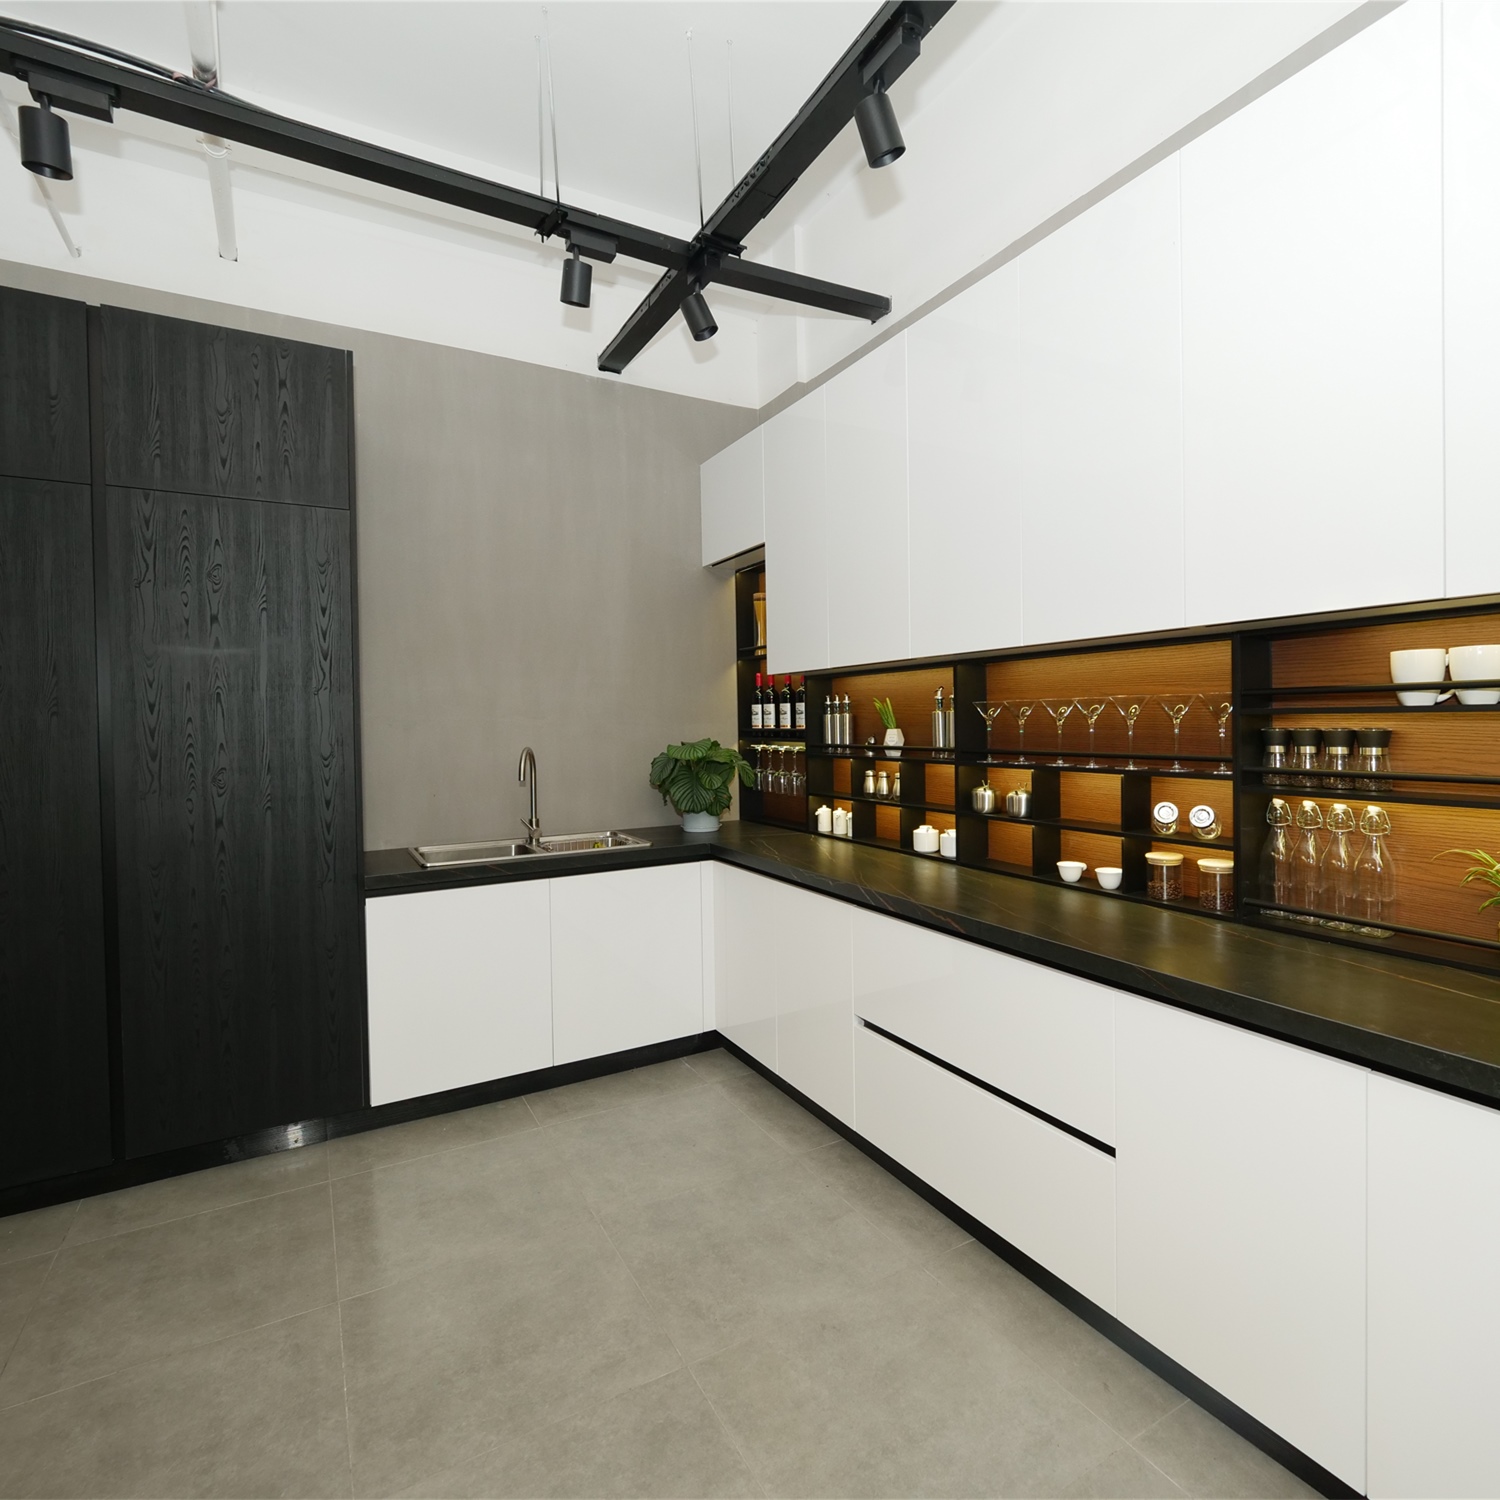 AisDecor lacquer kitchen cabinet exporter-2